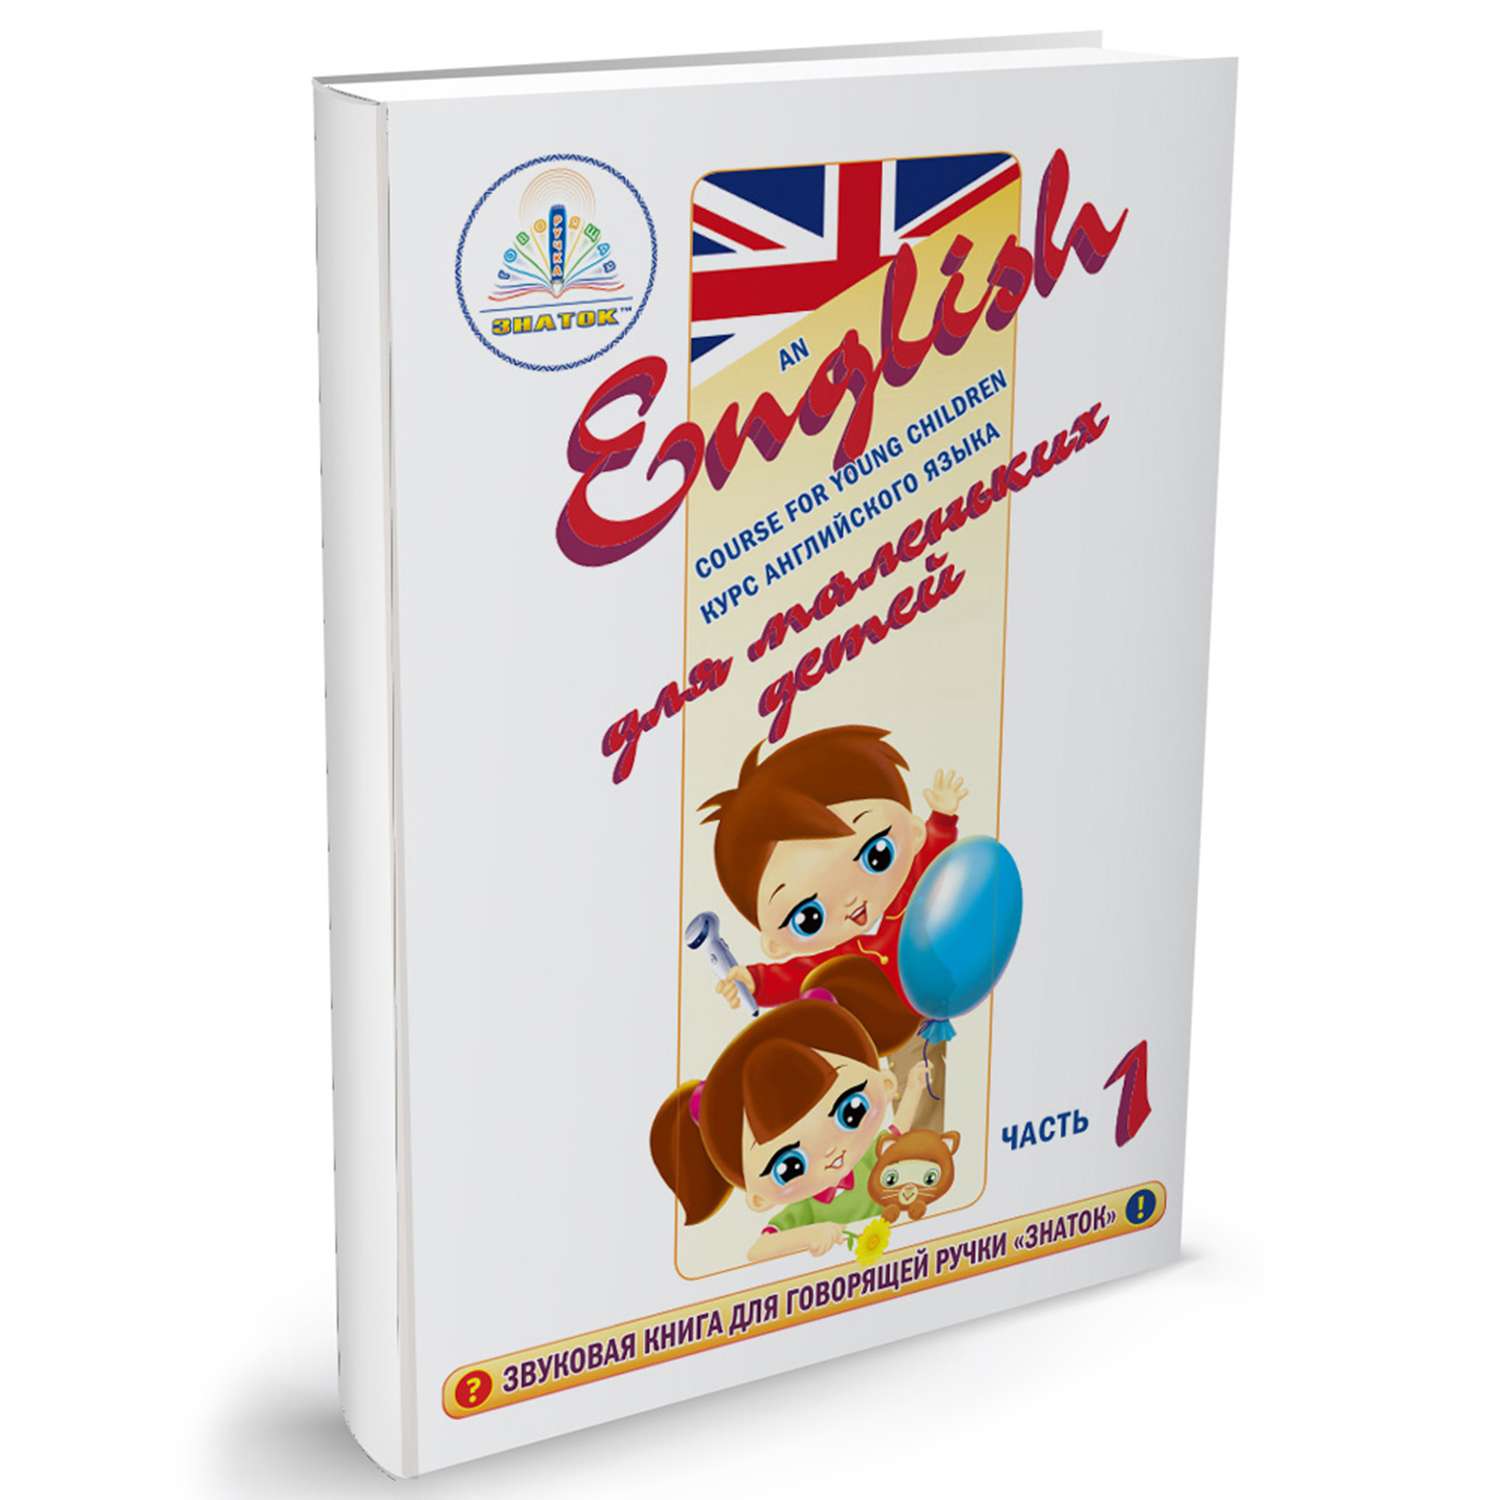 Книга для говорящей ручки ЗНАТОК Курс английского языка для маленьких детей (часть 1) - фото 1